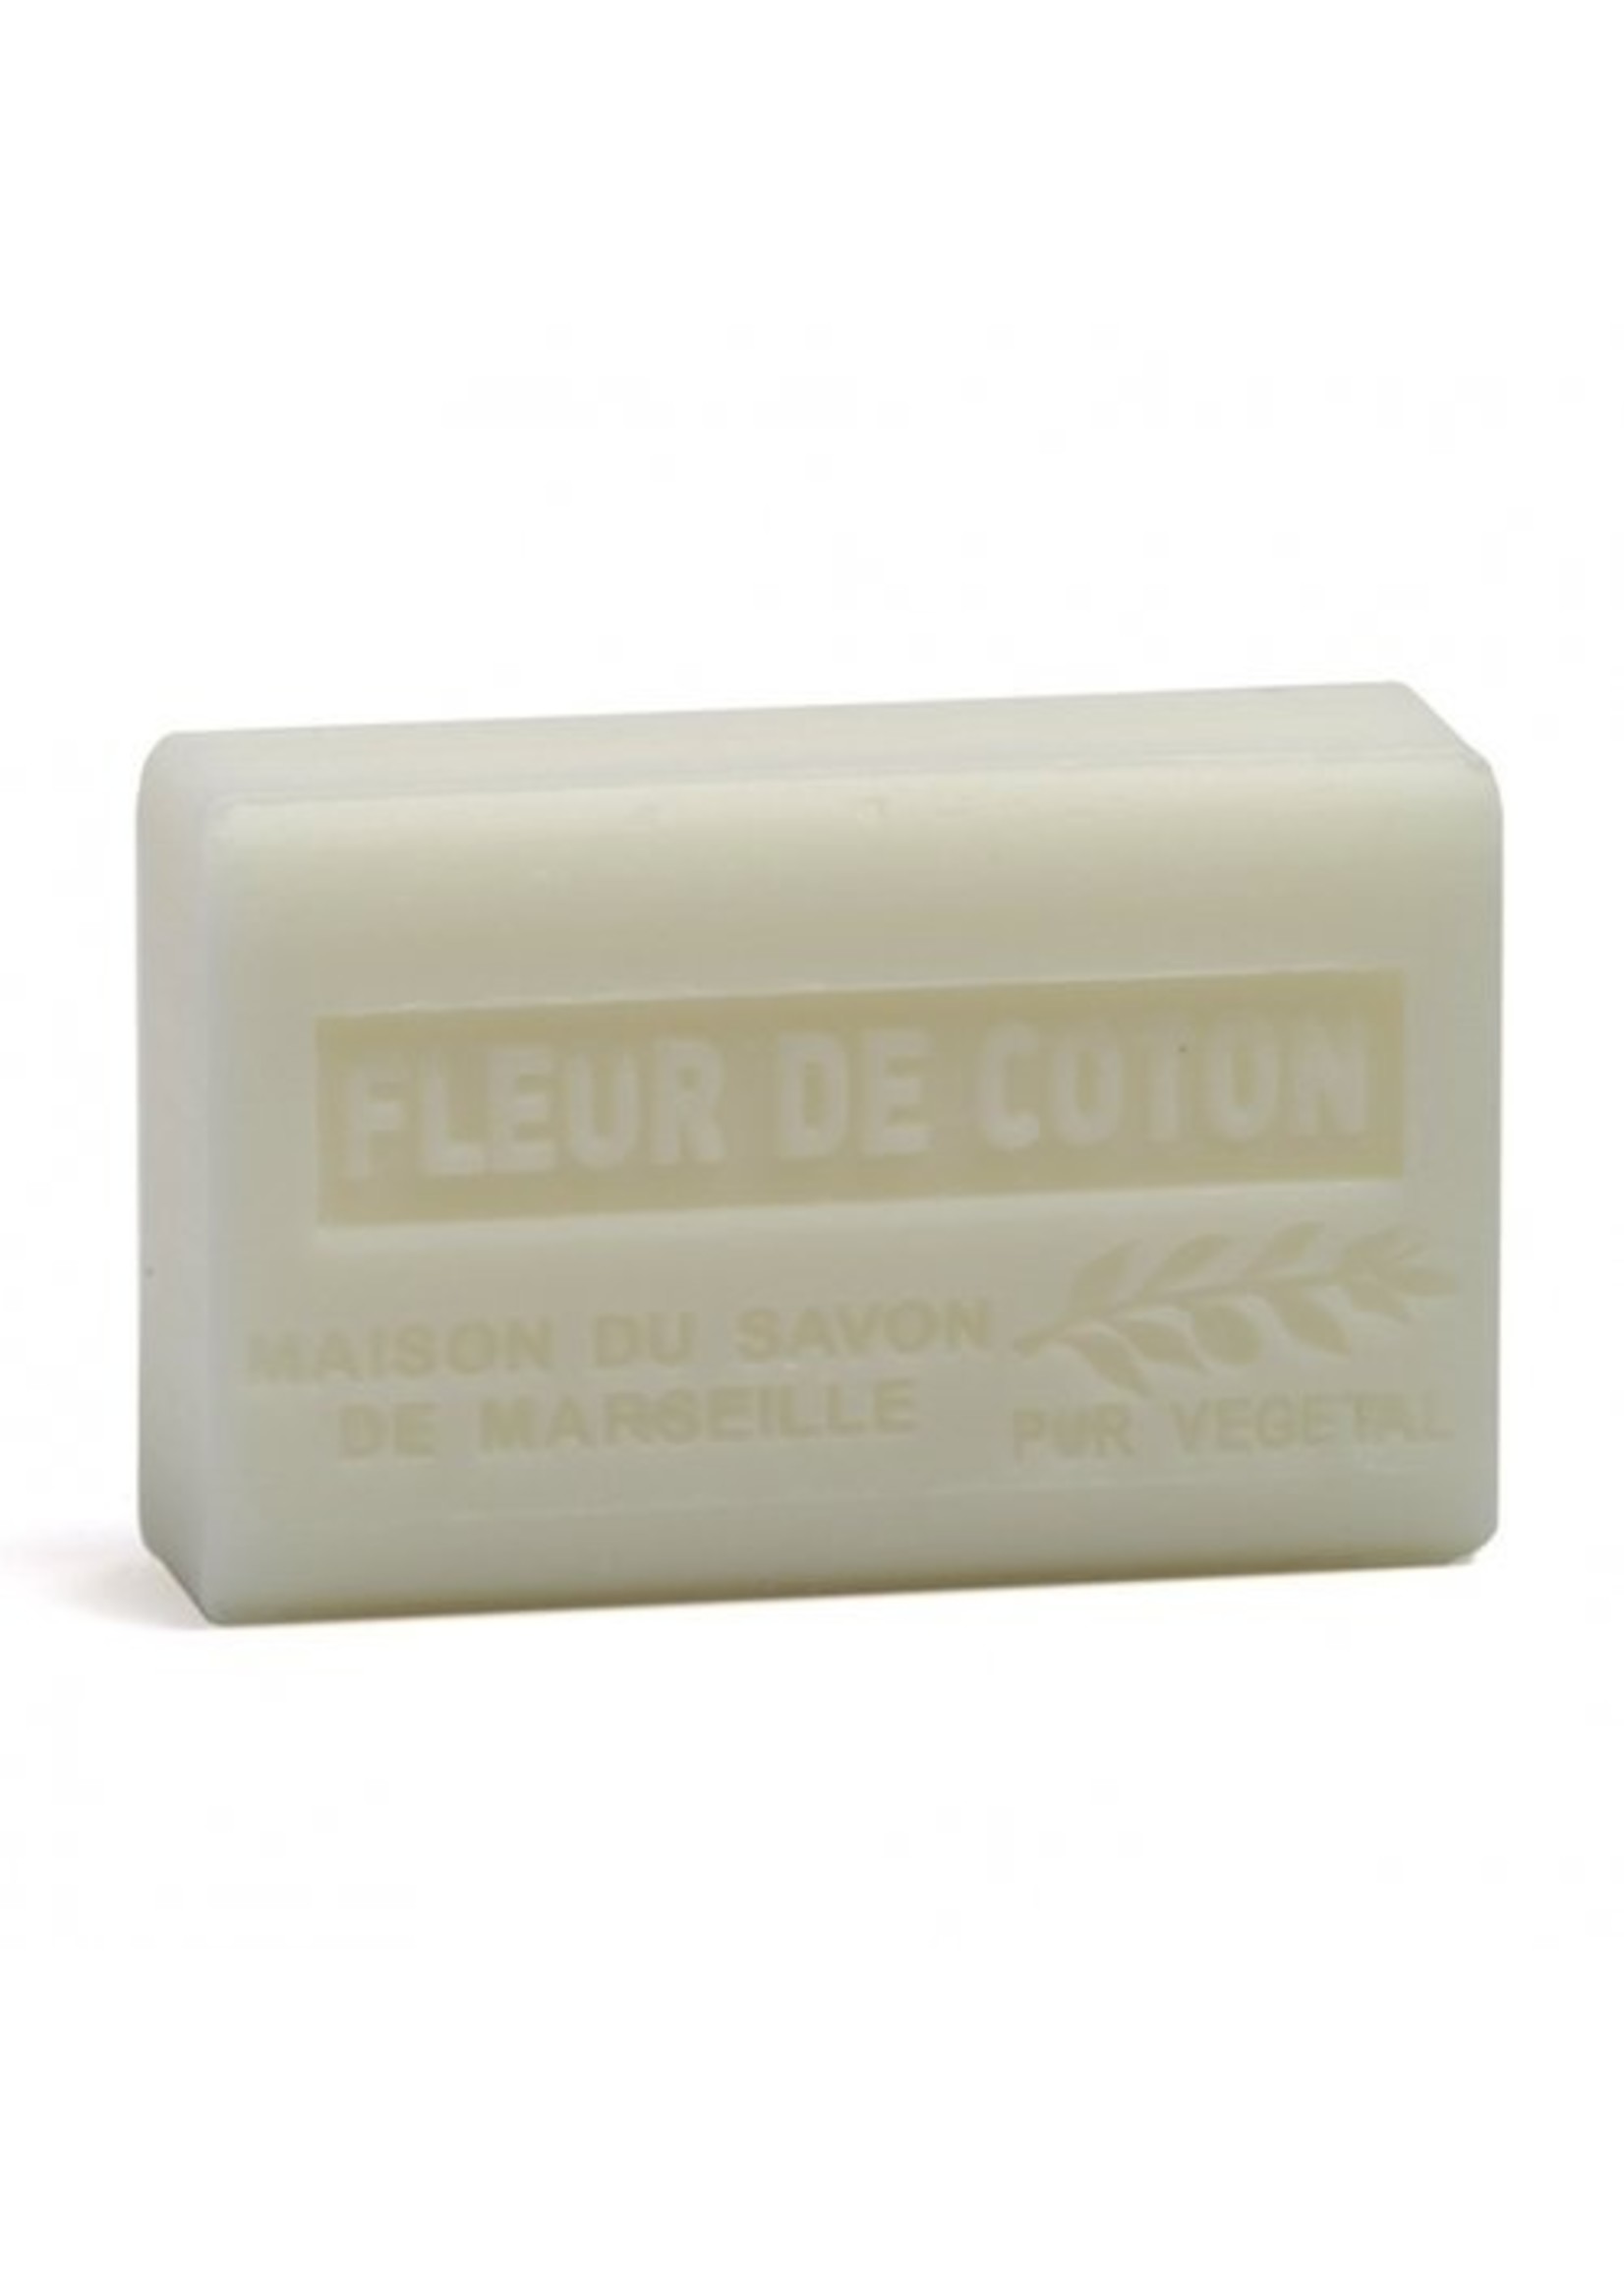 Rocaflor Bar marseille soap Fleur de coton 125 gram